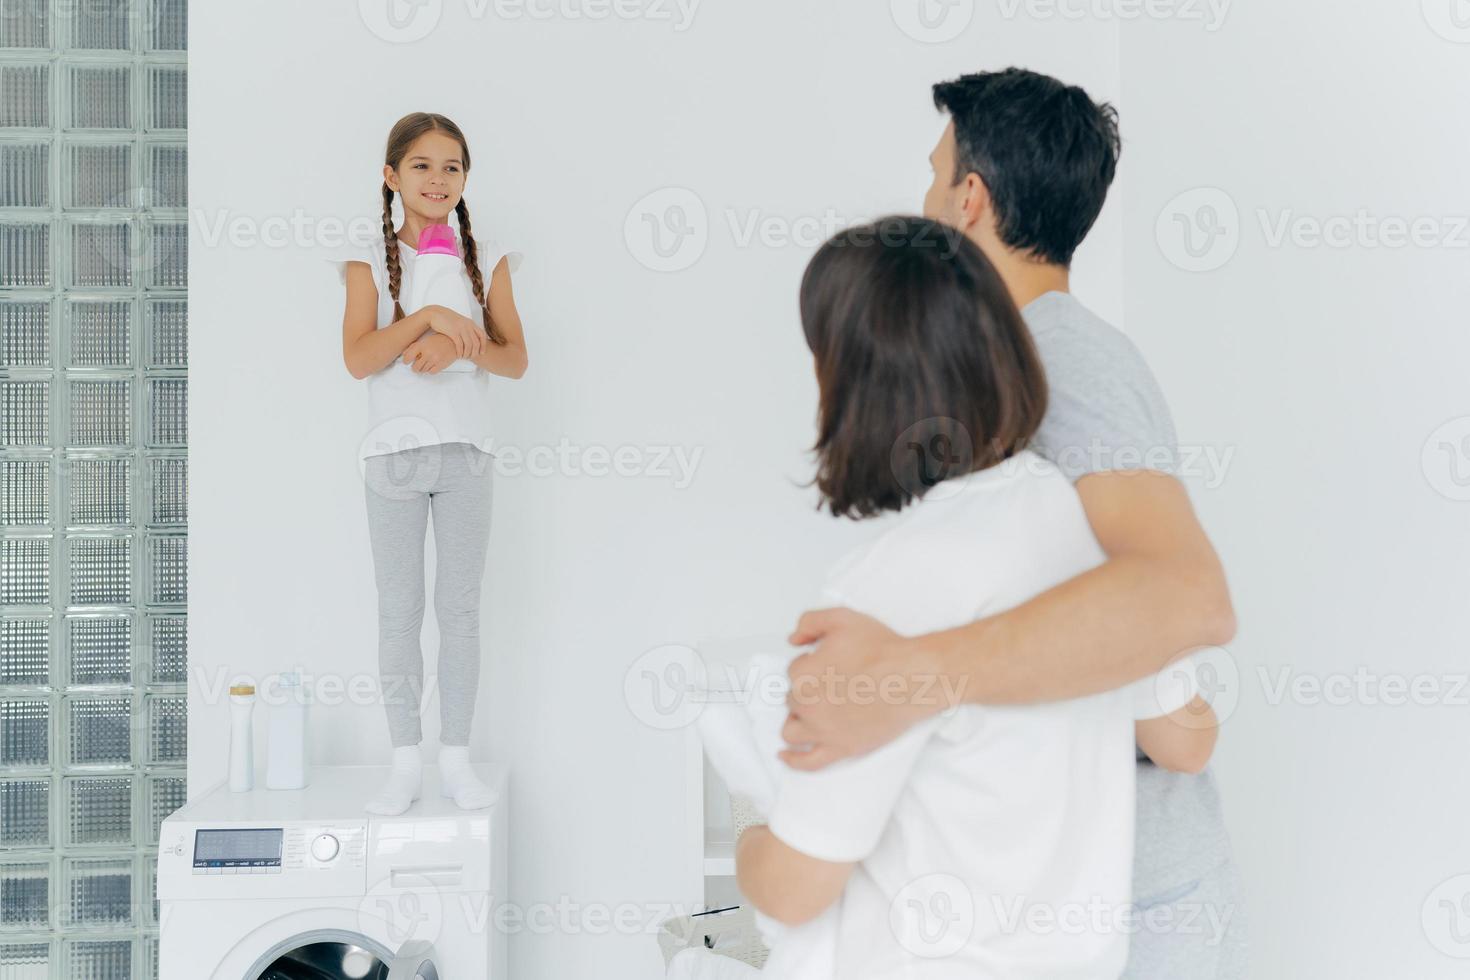 vista posterior del esposo y la esposa se abrazan y hablan con una niña pequeña parada en la lavadora con una botella de detergente, se lavan juntos durante el día libre, tienen mucho trabajo en la casa. día de lavado, rutina en casa foto